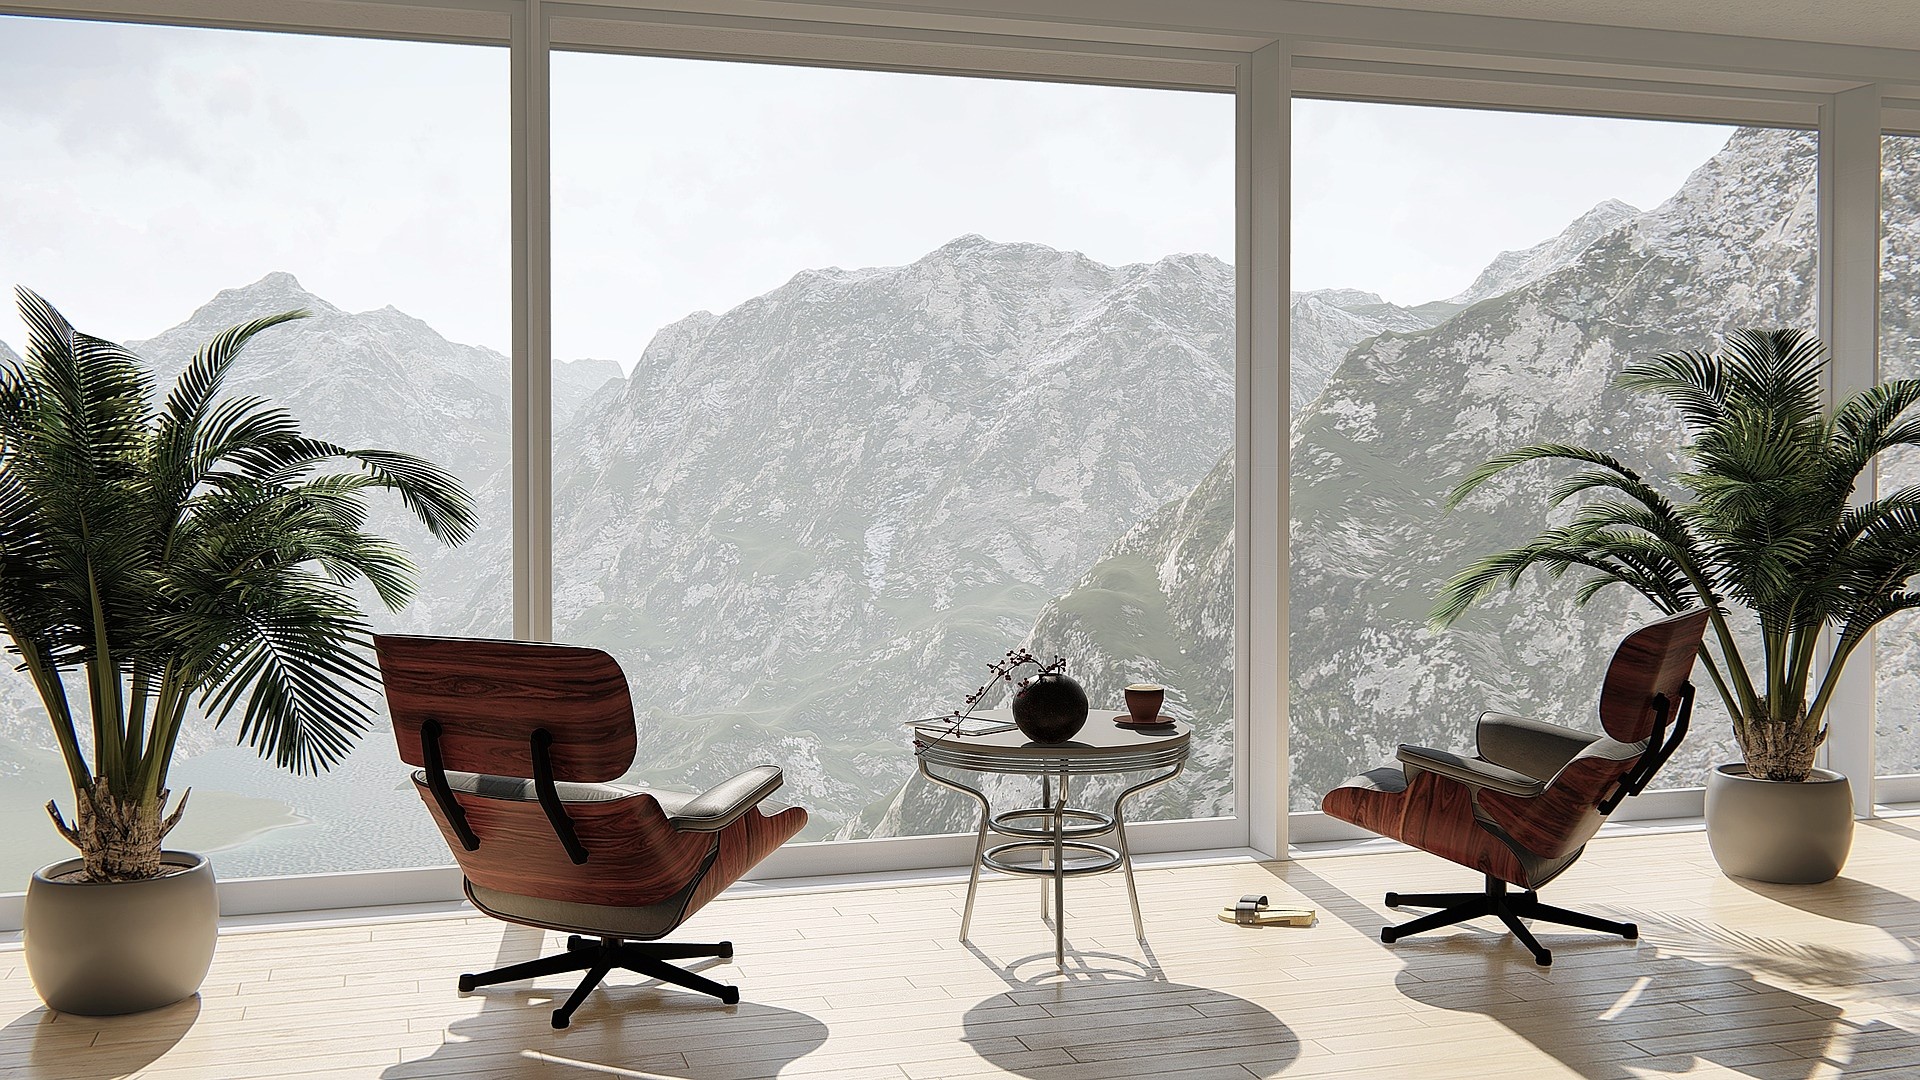 Read more about the article Fenster Vergleich: Welches Fenster ist das Beste?